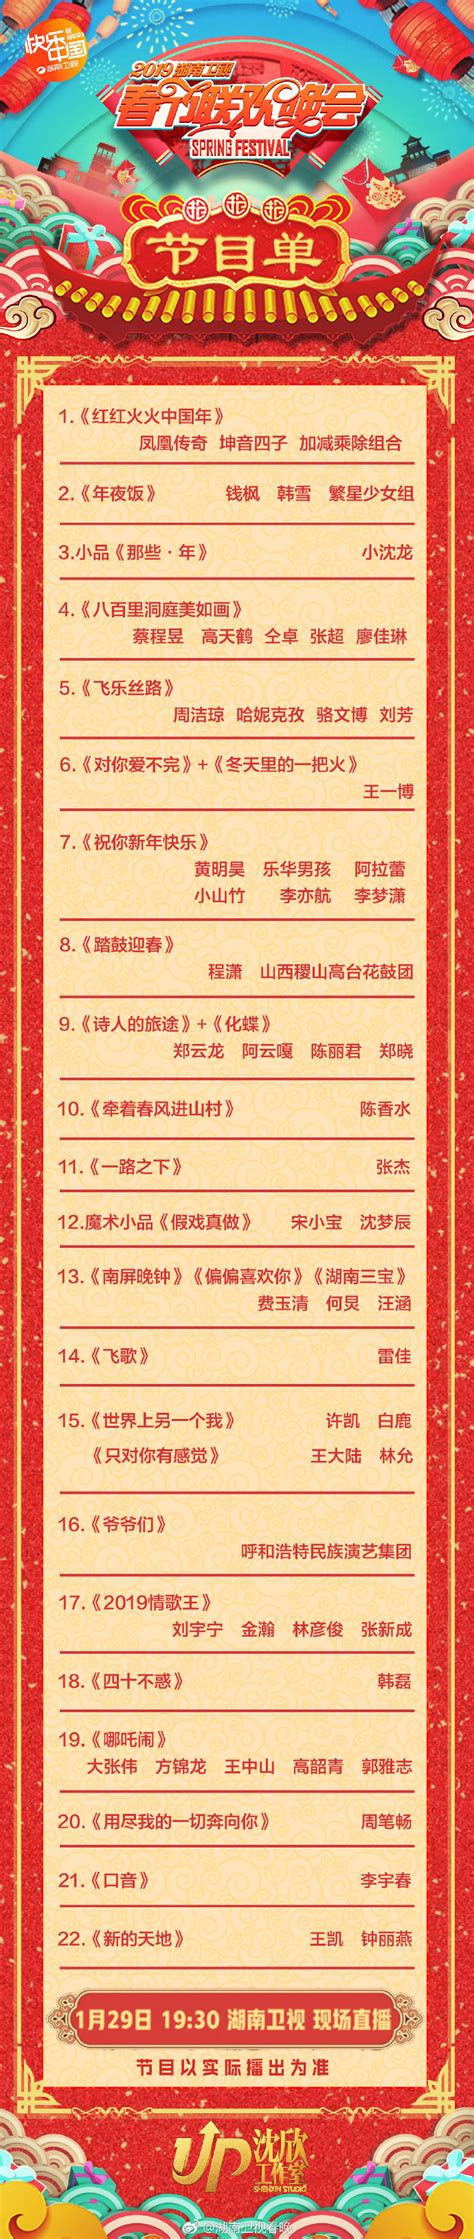 湖南卫视2019小年夜春晚节目单完整版 节目表演时间安排表 -闽南网